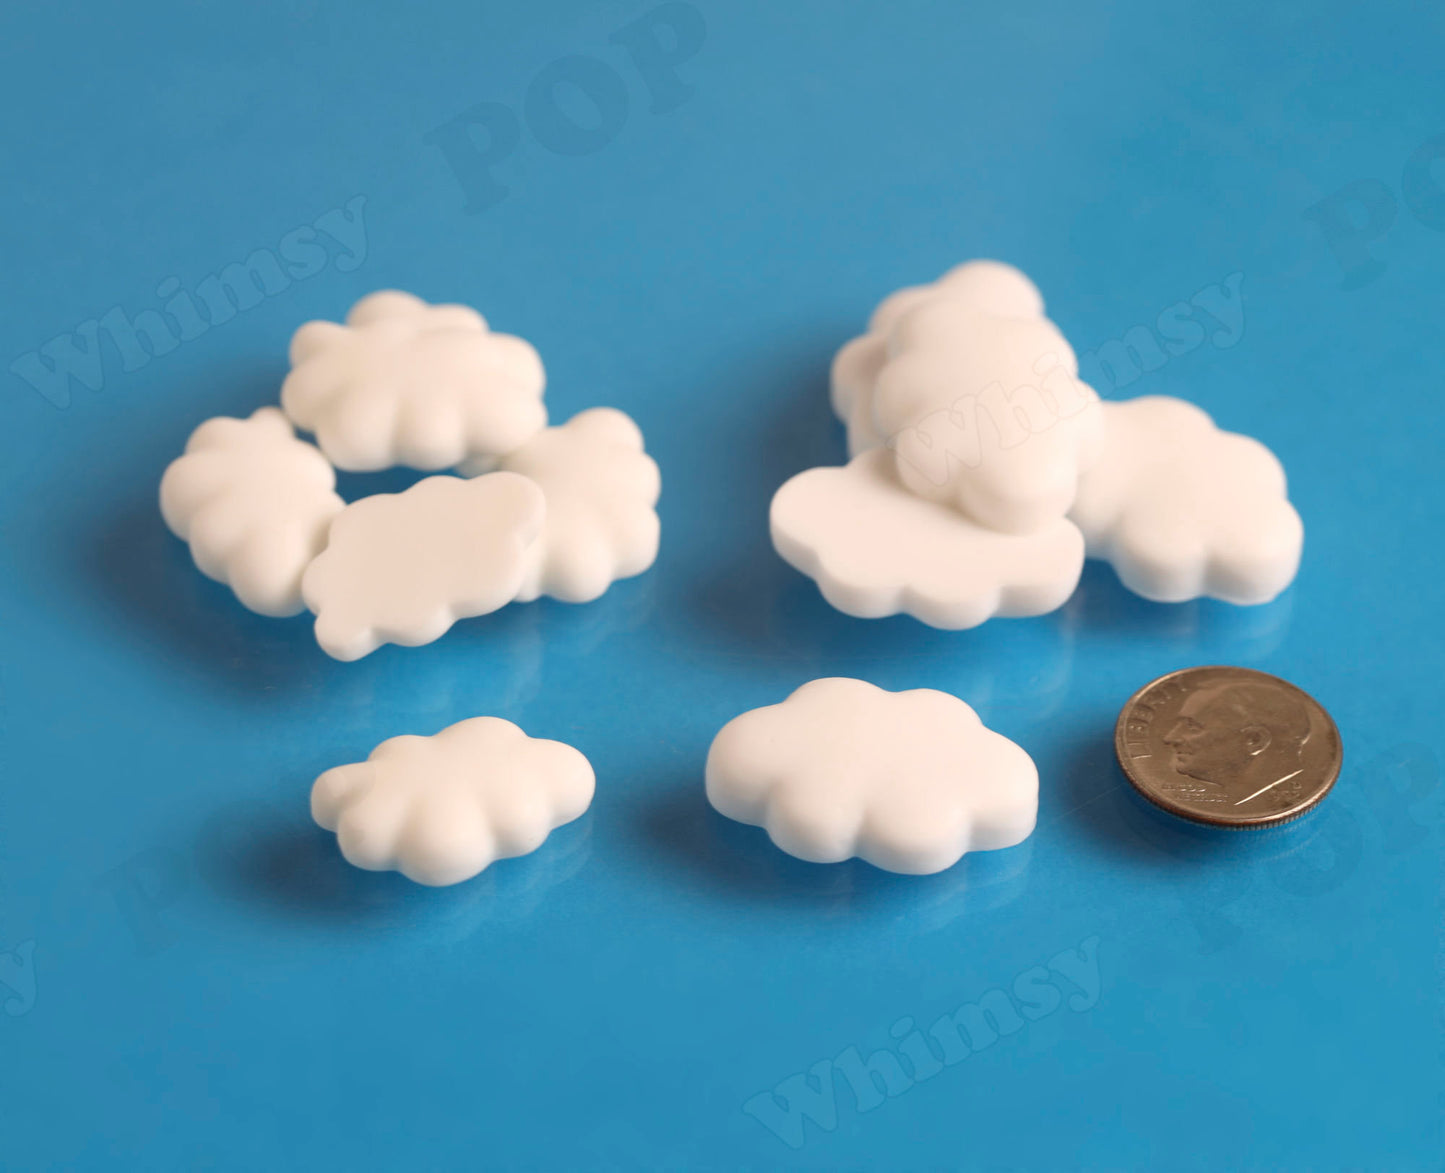 Soft Kawaii Resin Cloud Cabochons, Fluffy Cloud Decoden (R6-072)